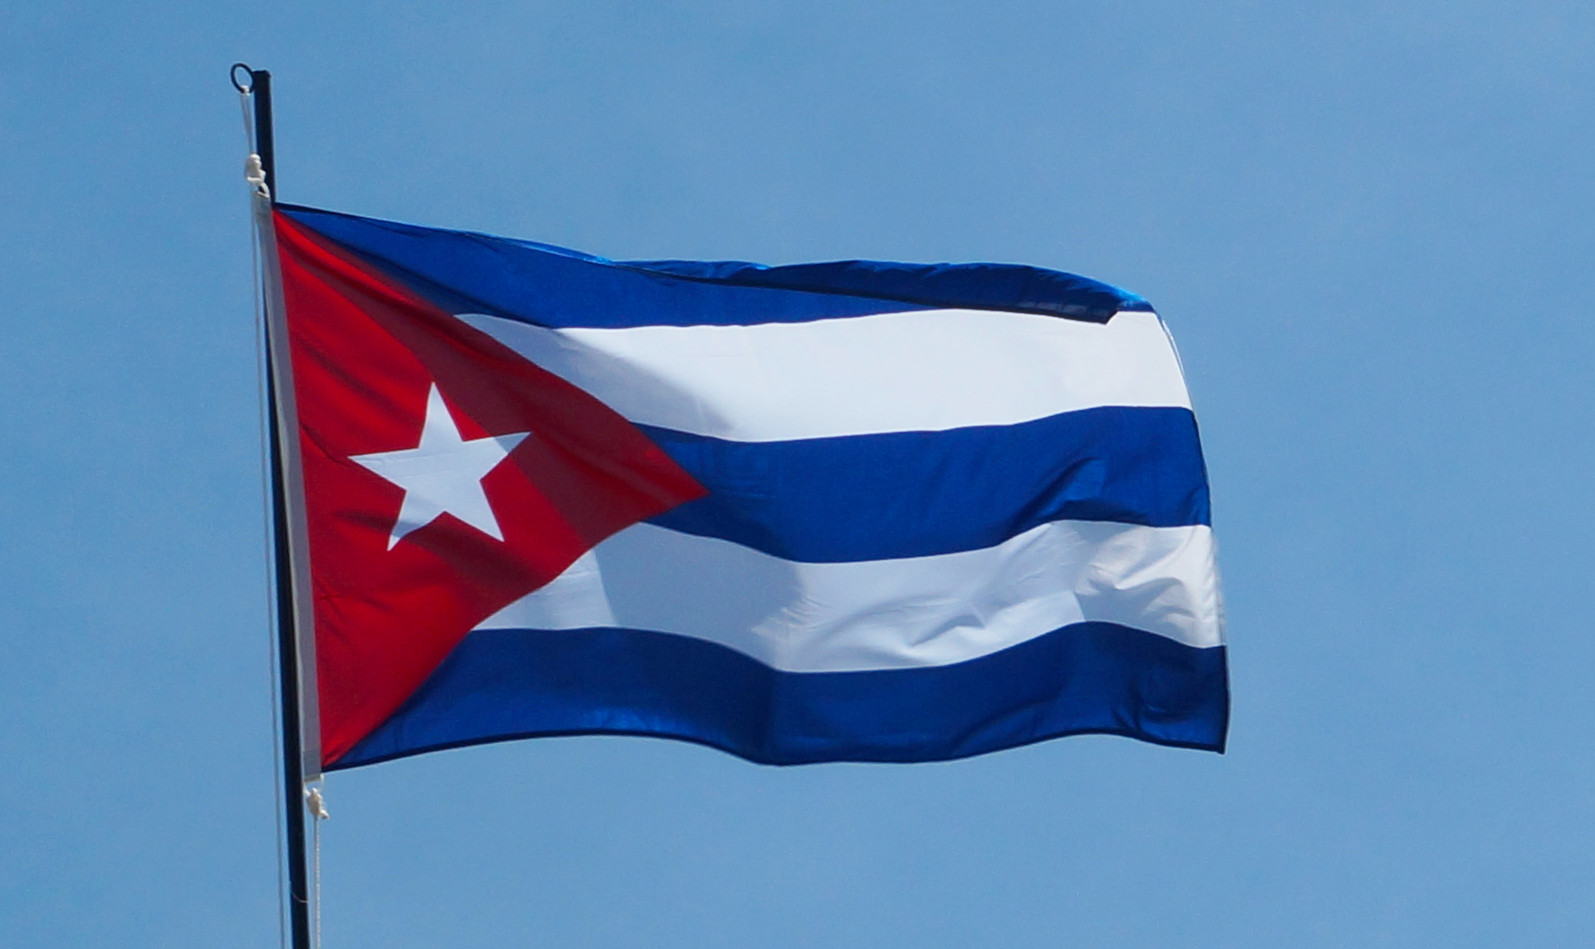 Assembleia Geral da ONU começou a analisar uma proposta de resolução apresentada por Cuba para exigir o fim do bloqueio econômico, comercial e financeiro imposto pelos Estados Unidos